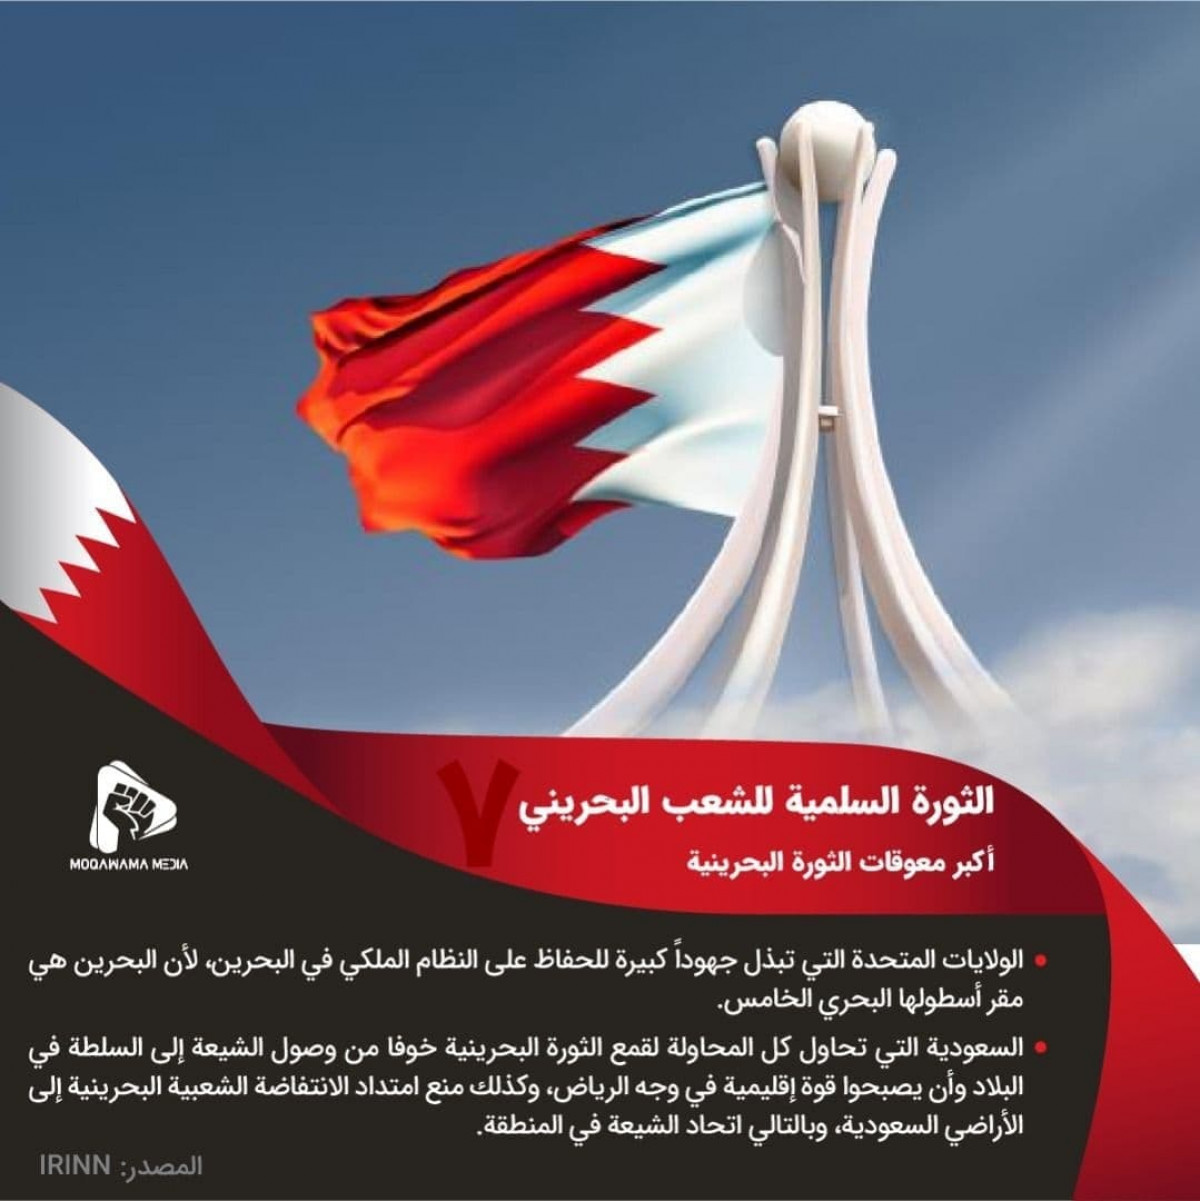 الثورة السلمية للشعب البحريني /  أكبر معوقات الثورة البحرينية